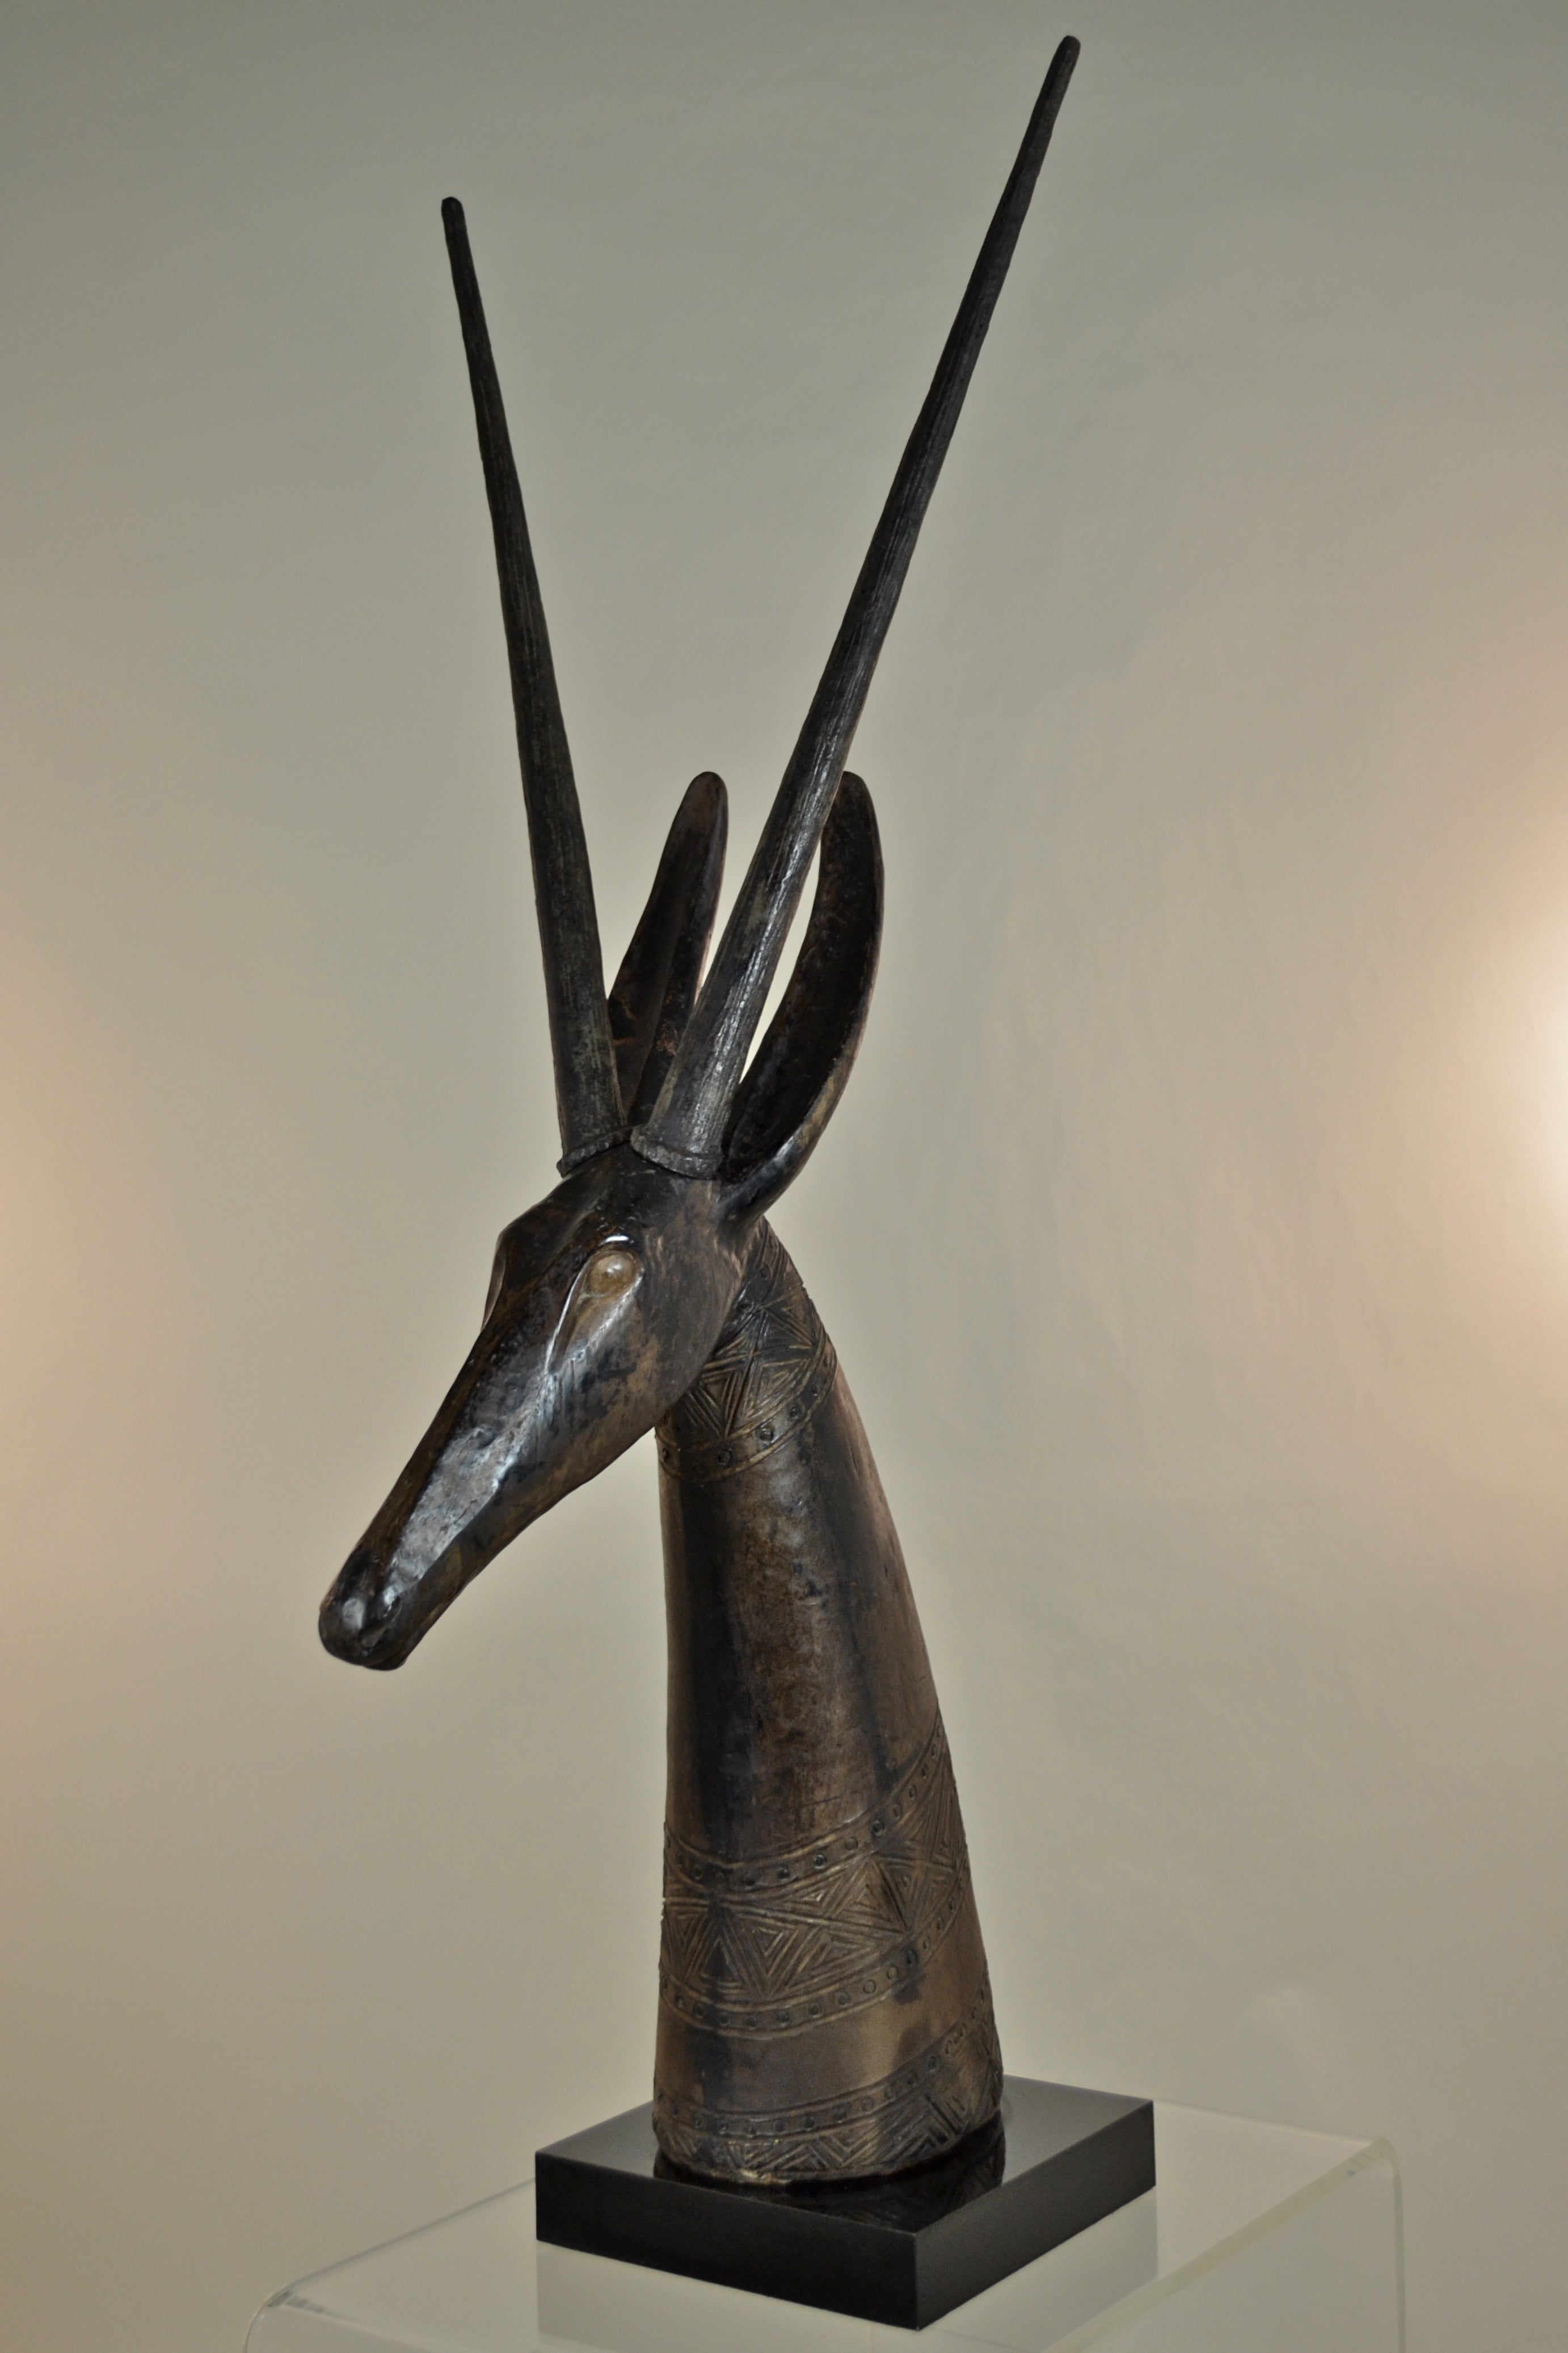 Large Antelope Sculpture